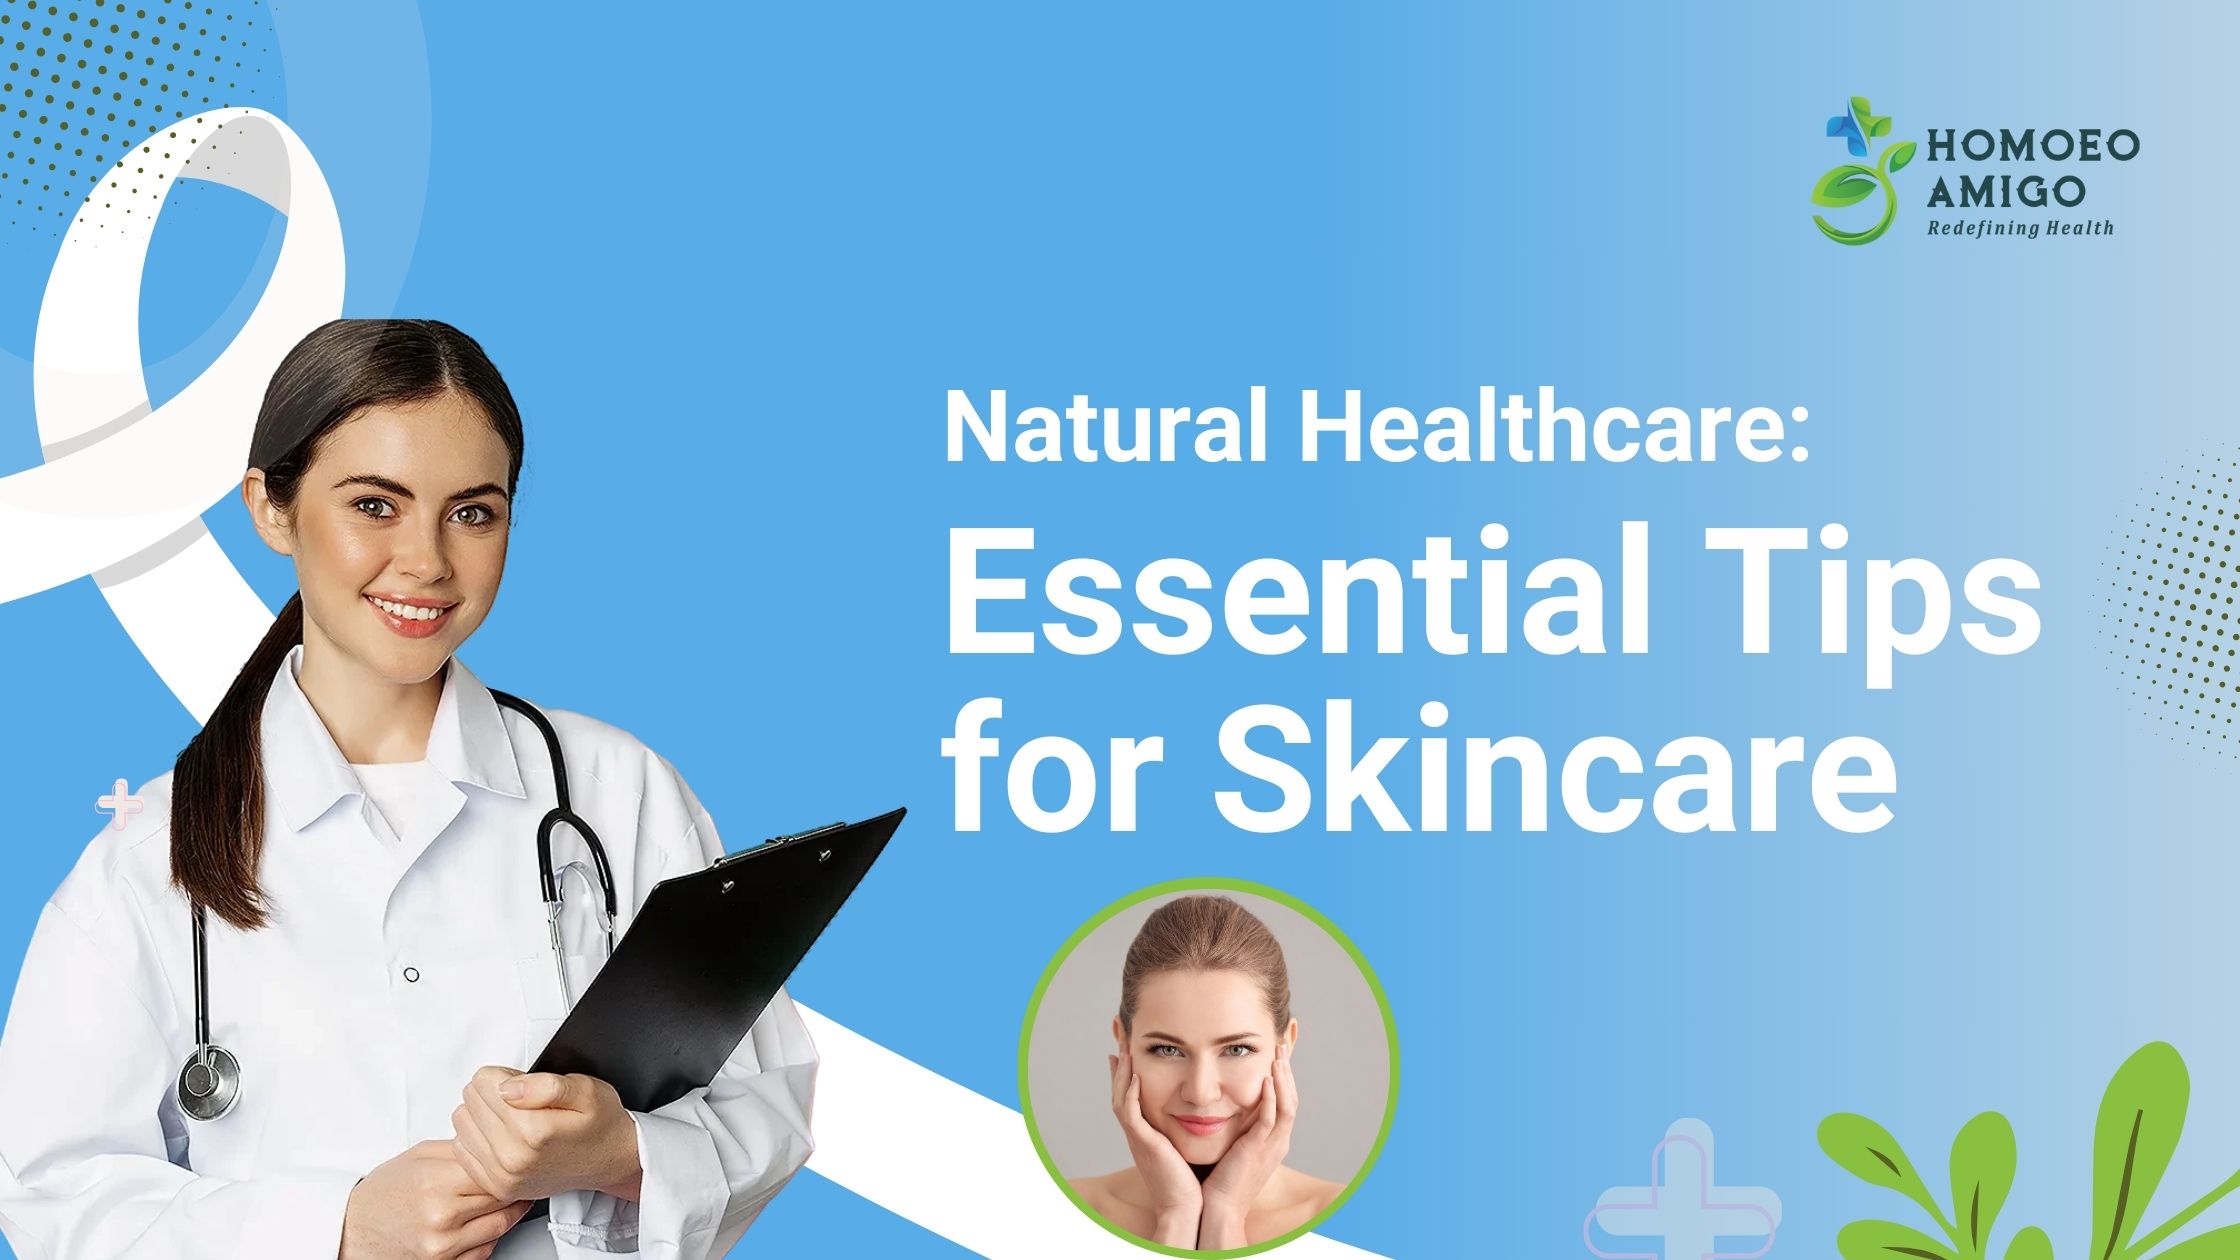 Natural Healthcare Essential Tips for Skincare - Homoeo Amigo